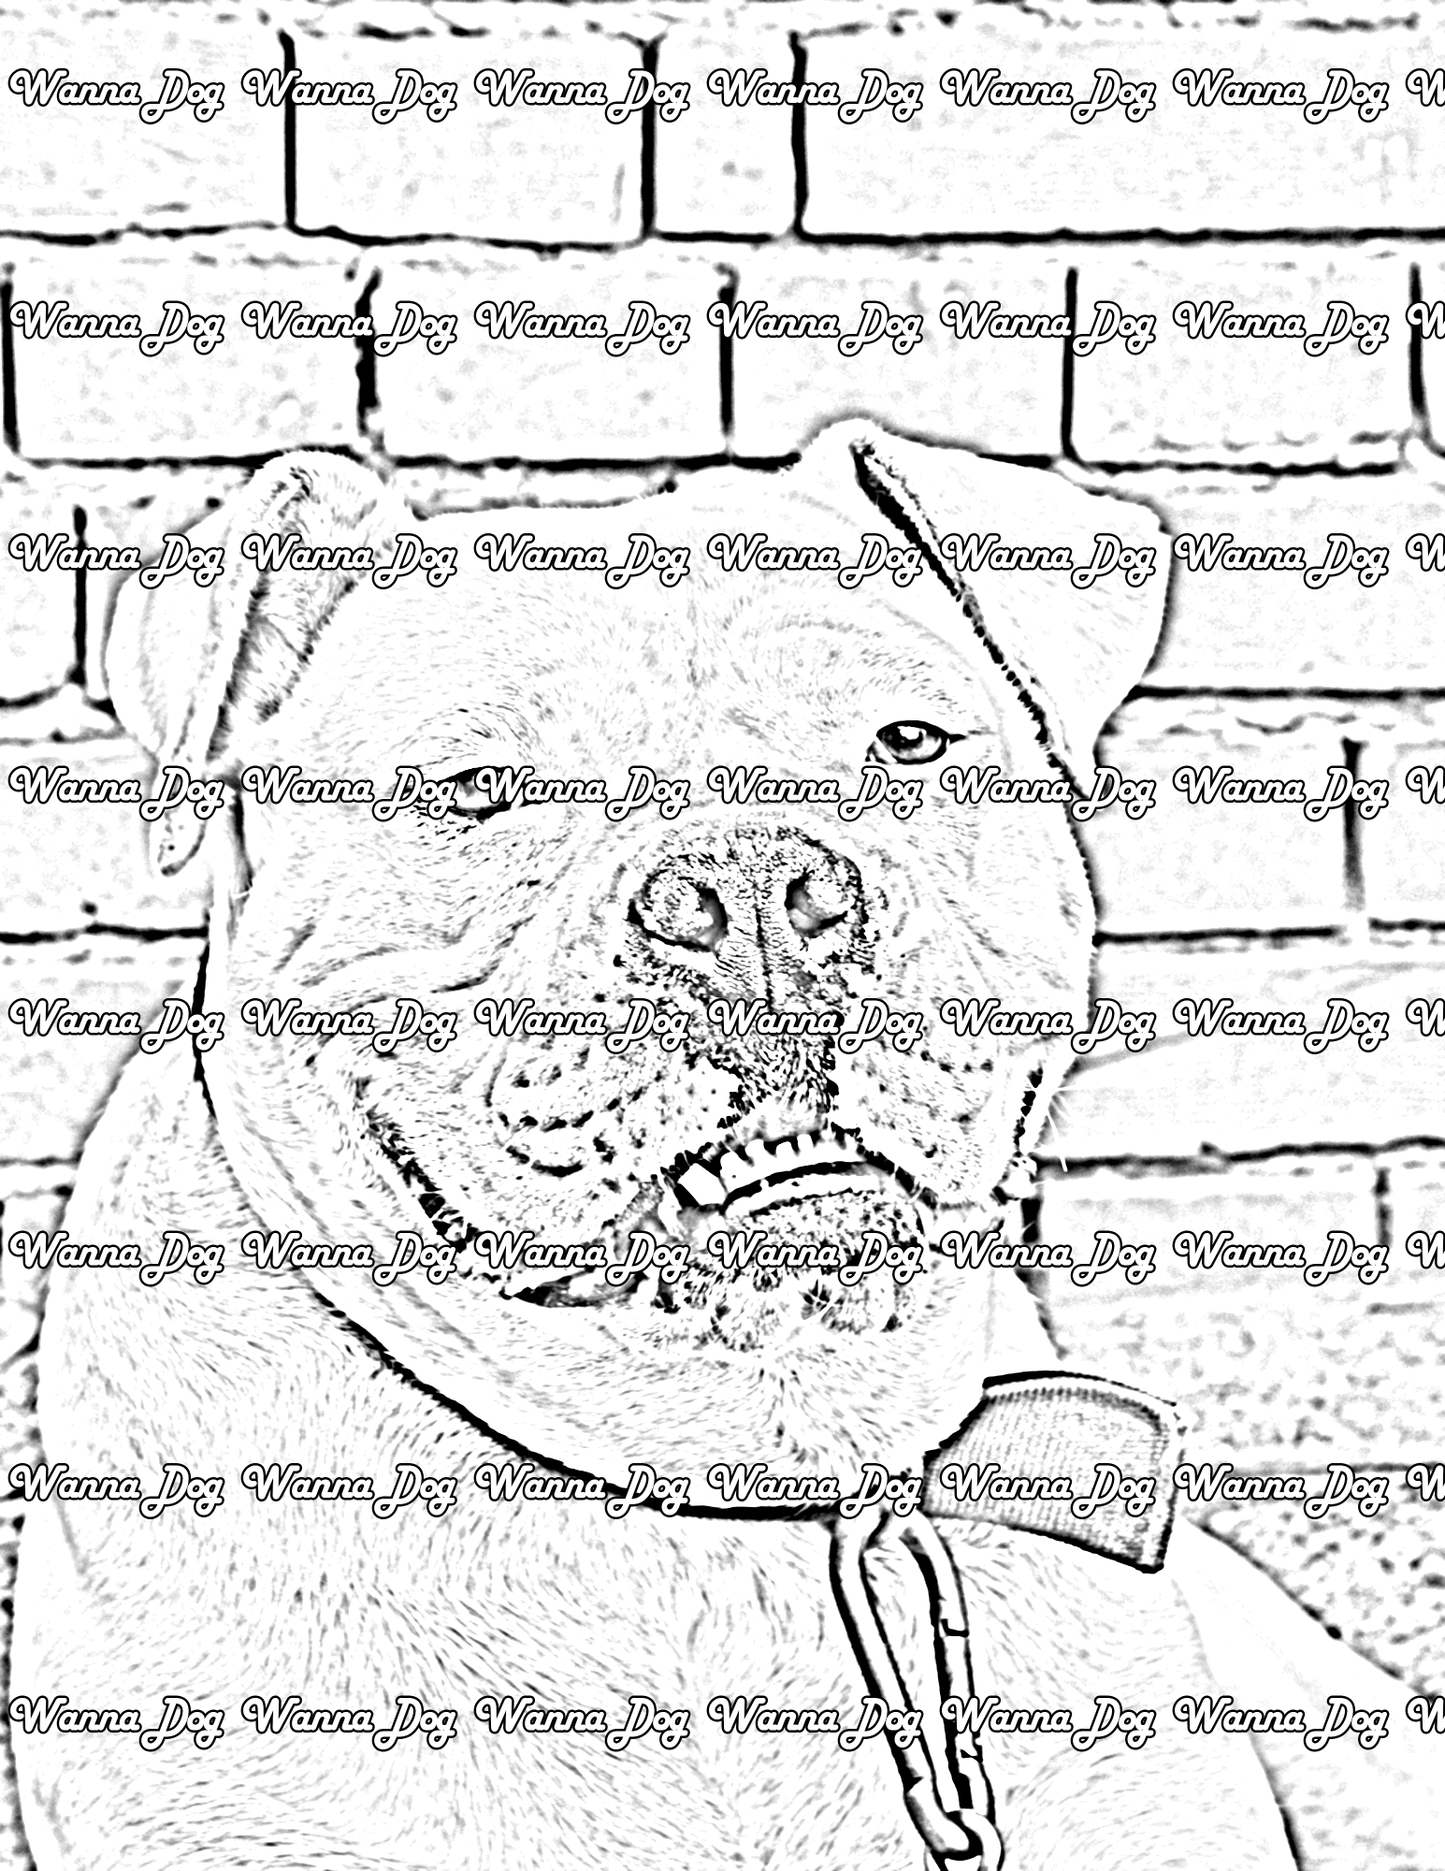 American Bulldog Coloring Page of a American Bulldog sitting by a brick wall